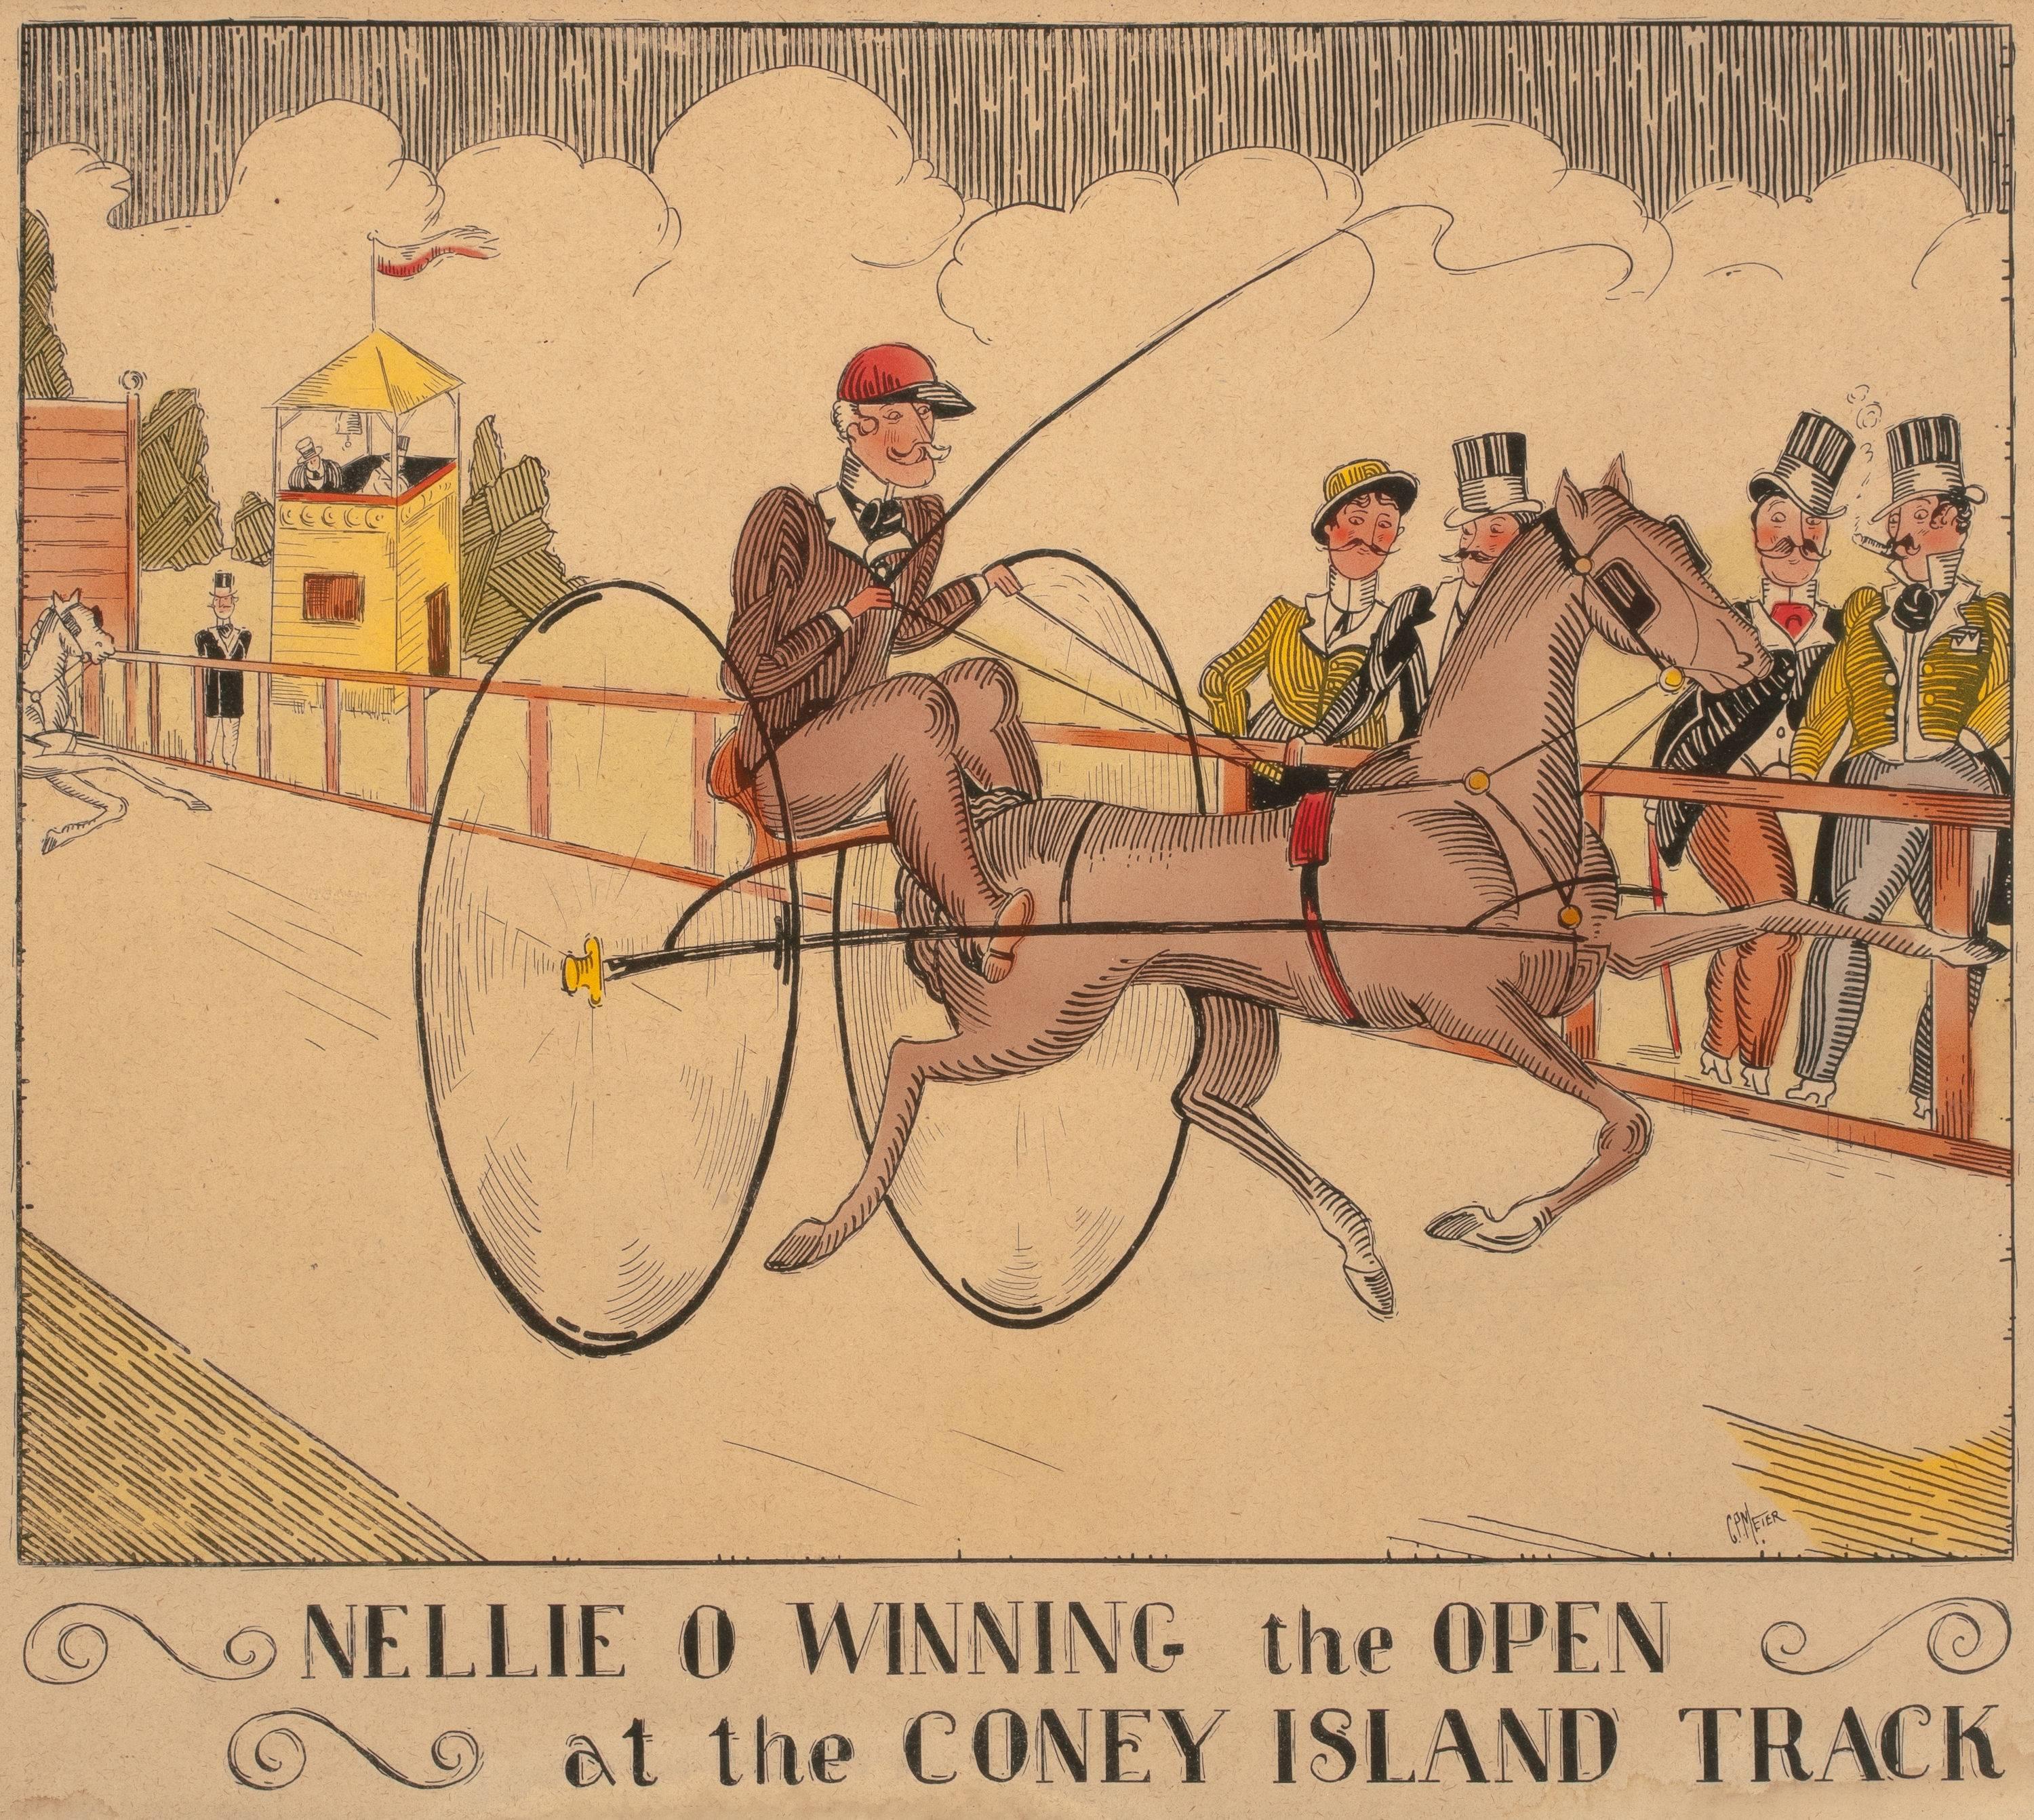 Nellie O - « Winning the Open at the Coney Island Track » (Récompensé pour l'ouverture de l'Open)